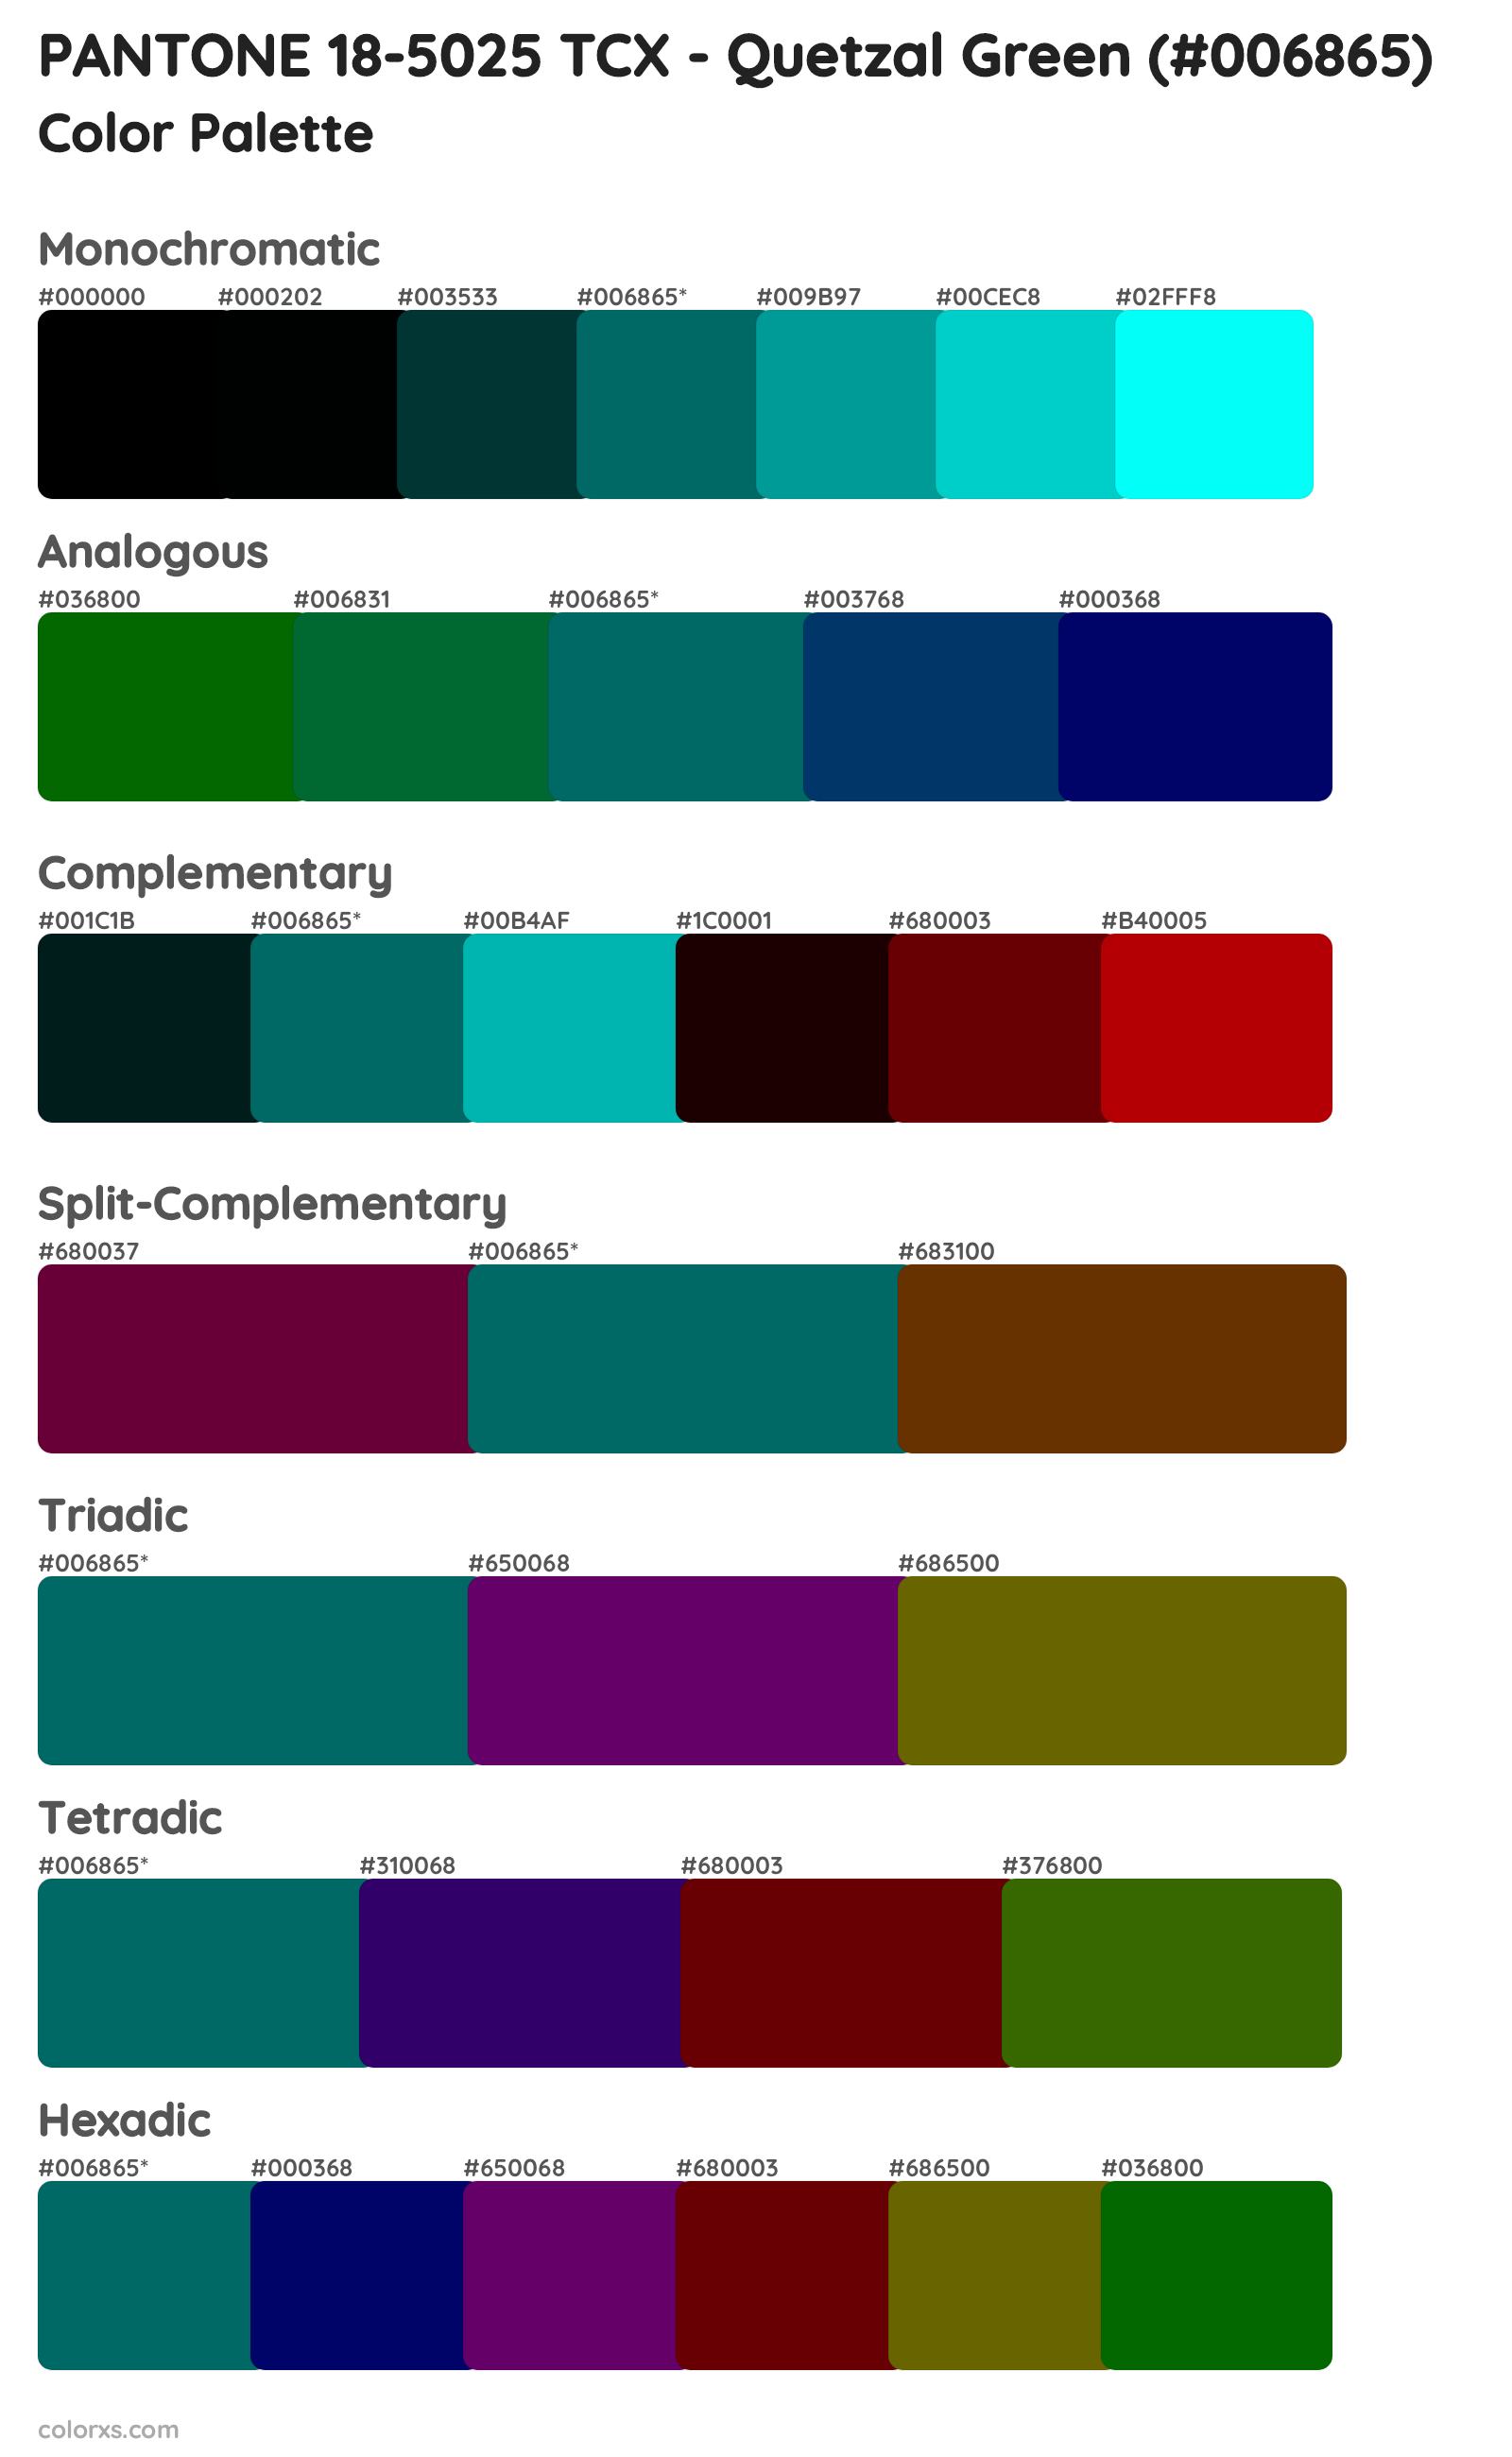 PANTONE 18-5025 TCX - Quetzal Green Color Scheme Palettes